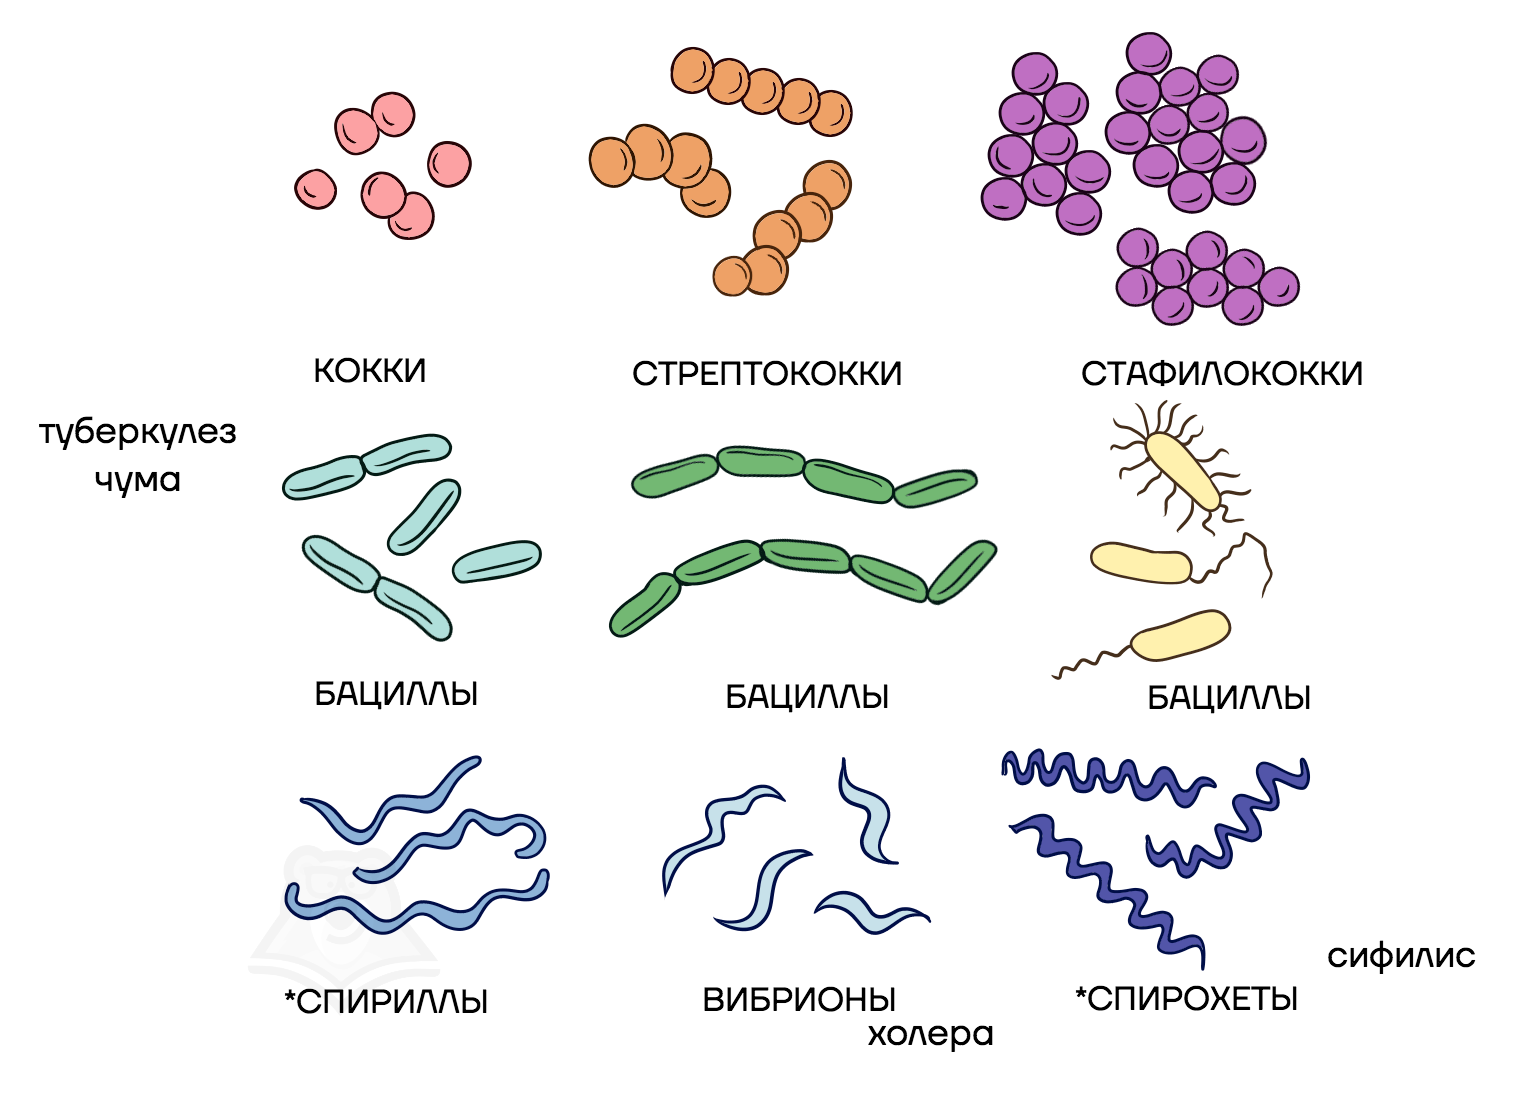 Бактерии изогнутой формы носят название. Стрептококки бациллы спириллы вибрионы. Палочковидные бактерии бациллы. Вибрионы стафилококки бациллы спириллы. Кокки бациллы вибрионы спириллы.